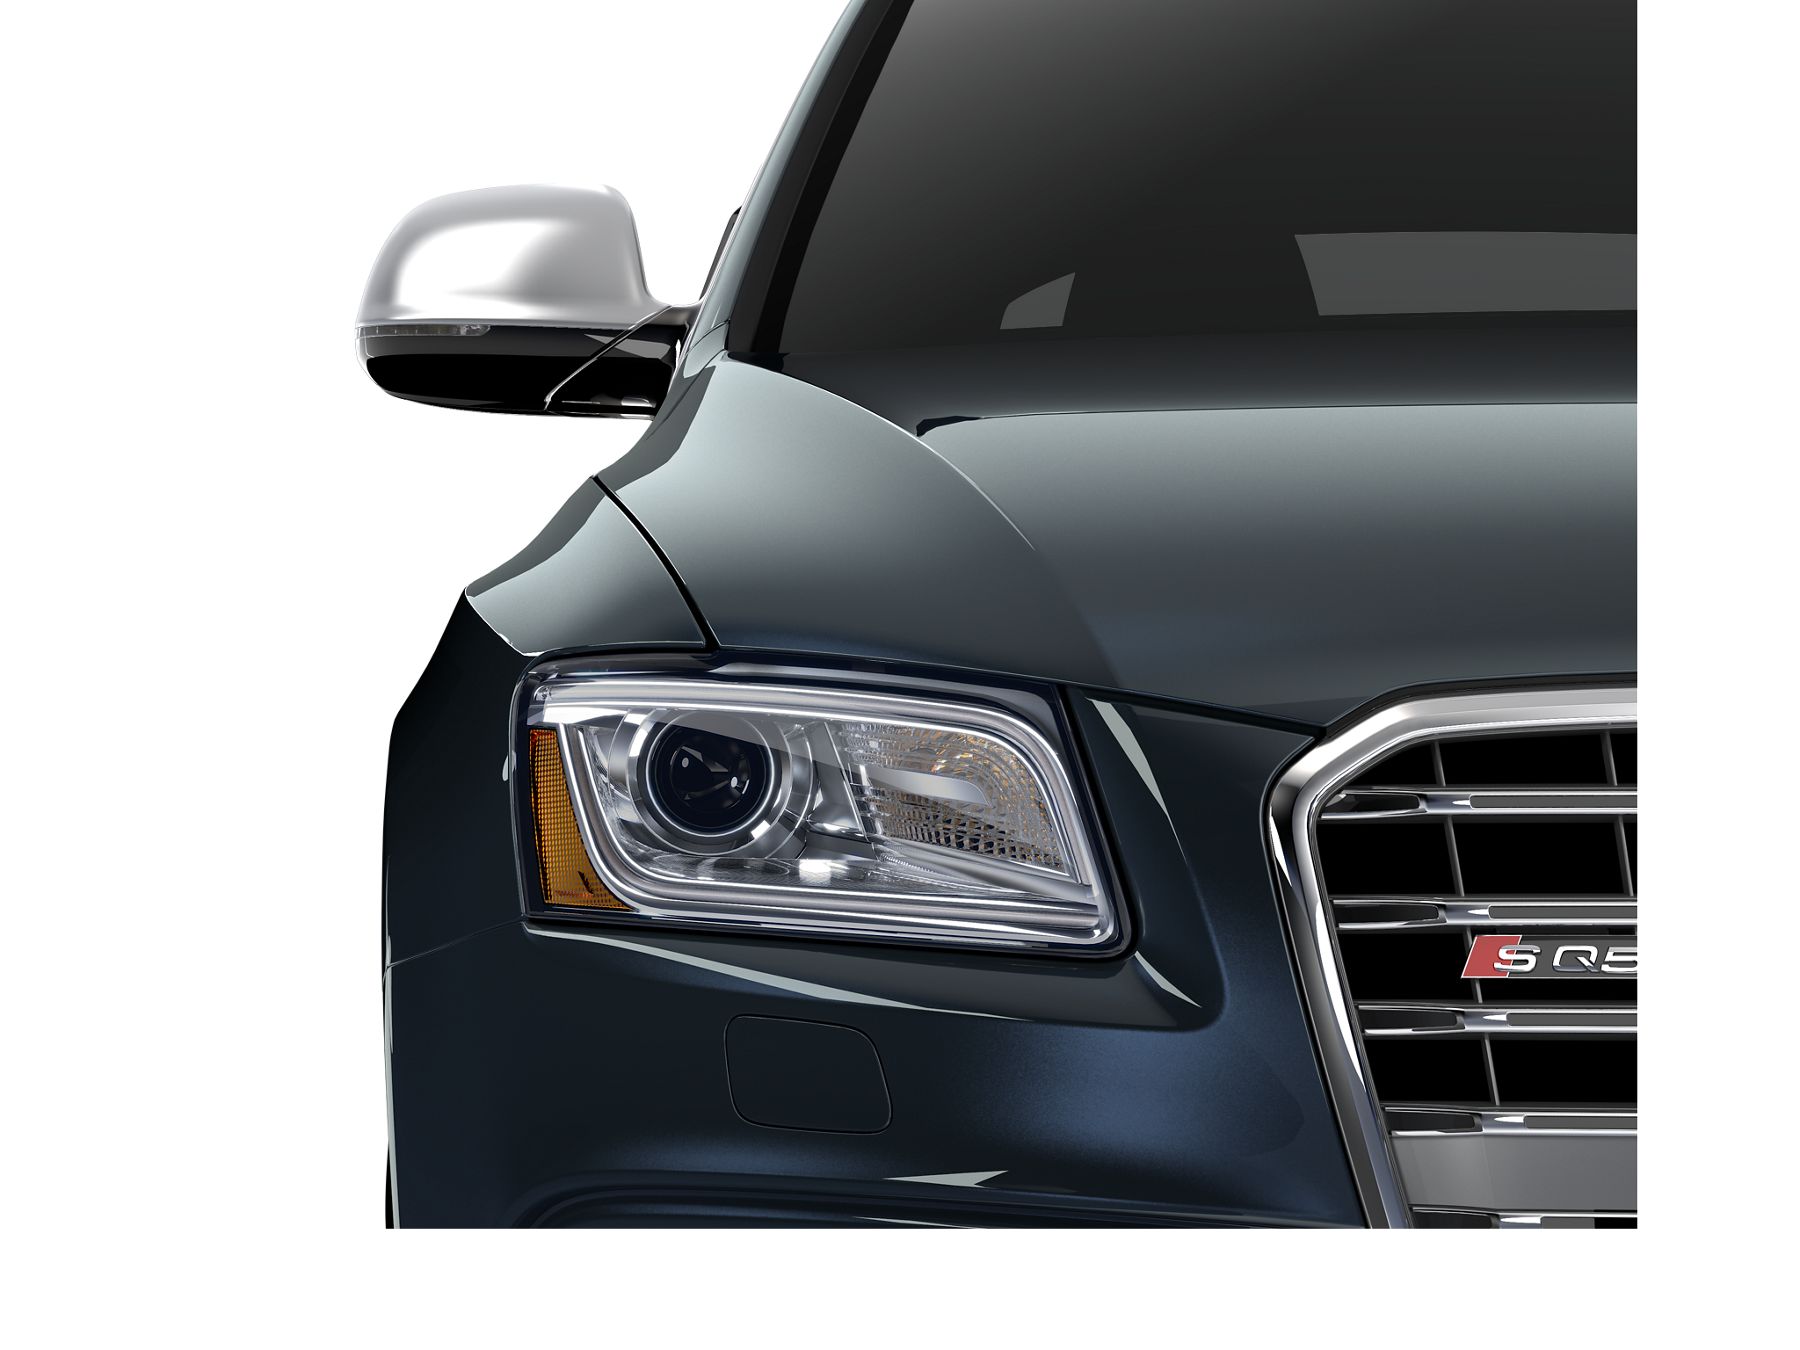 Audi SQ5 Prestige front Headlight view